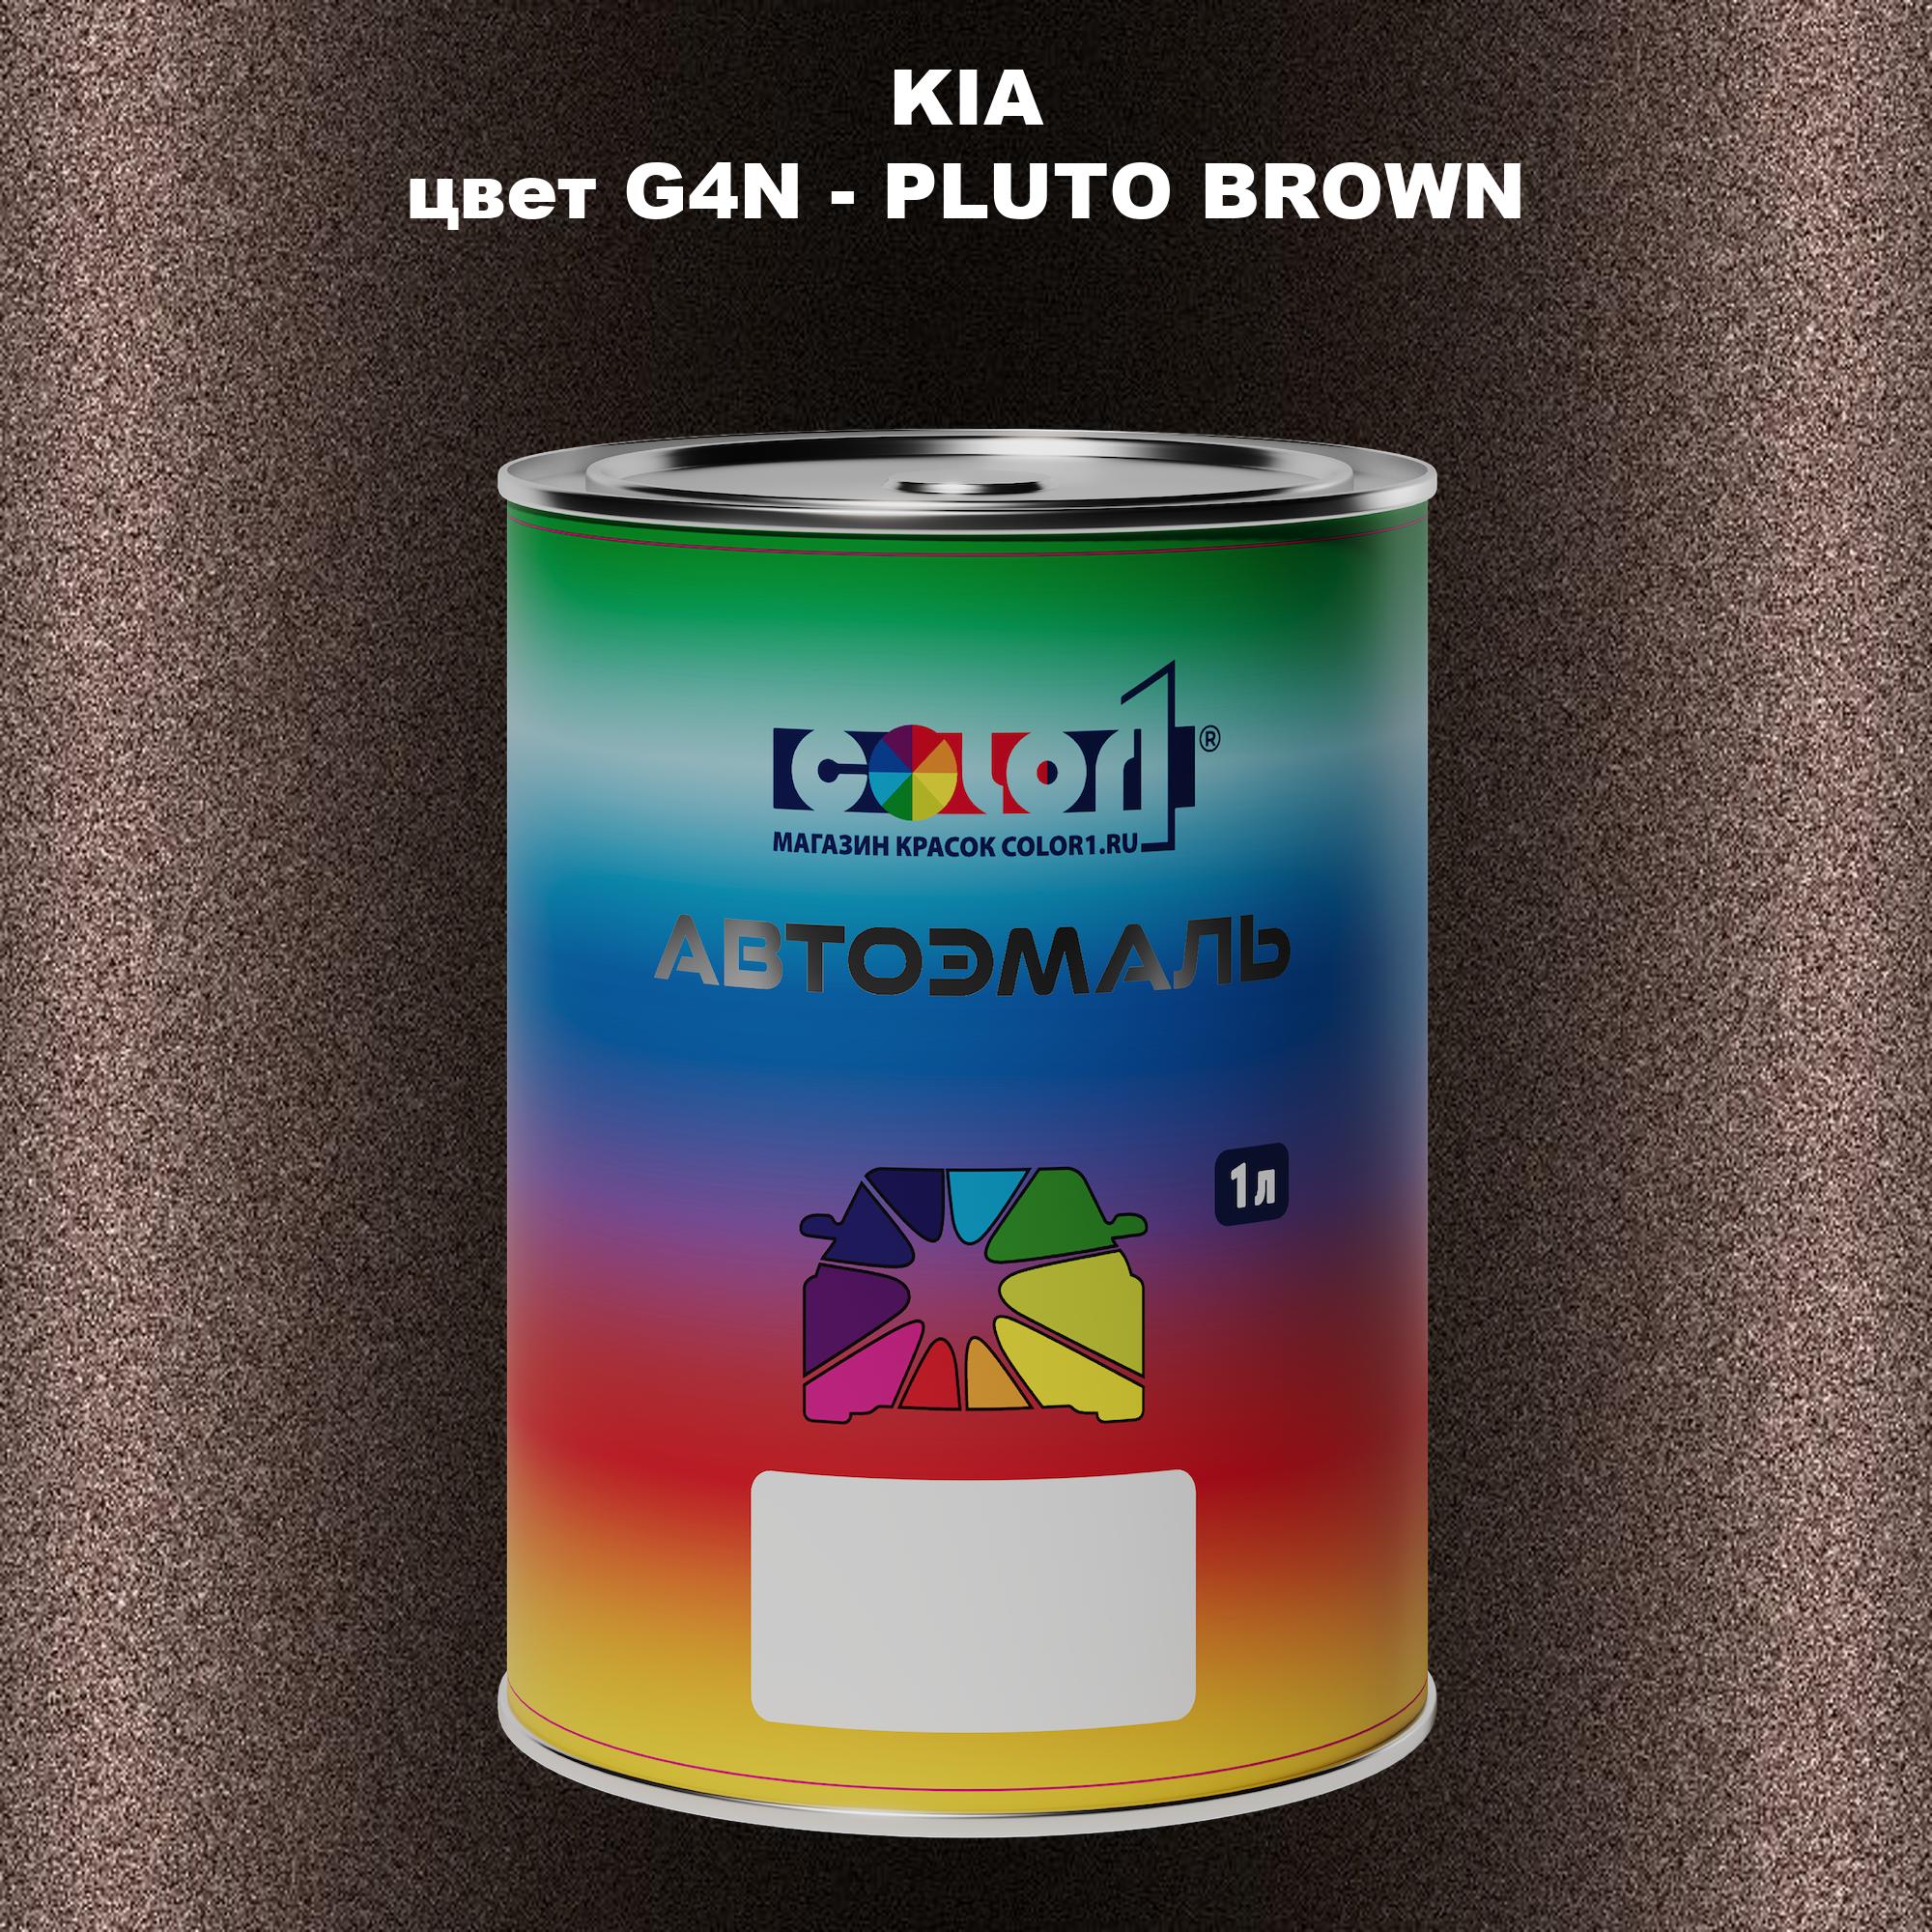 Автомобильная краска COLOR1 для KIA, цвет G4N - PLUTO BROWN